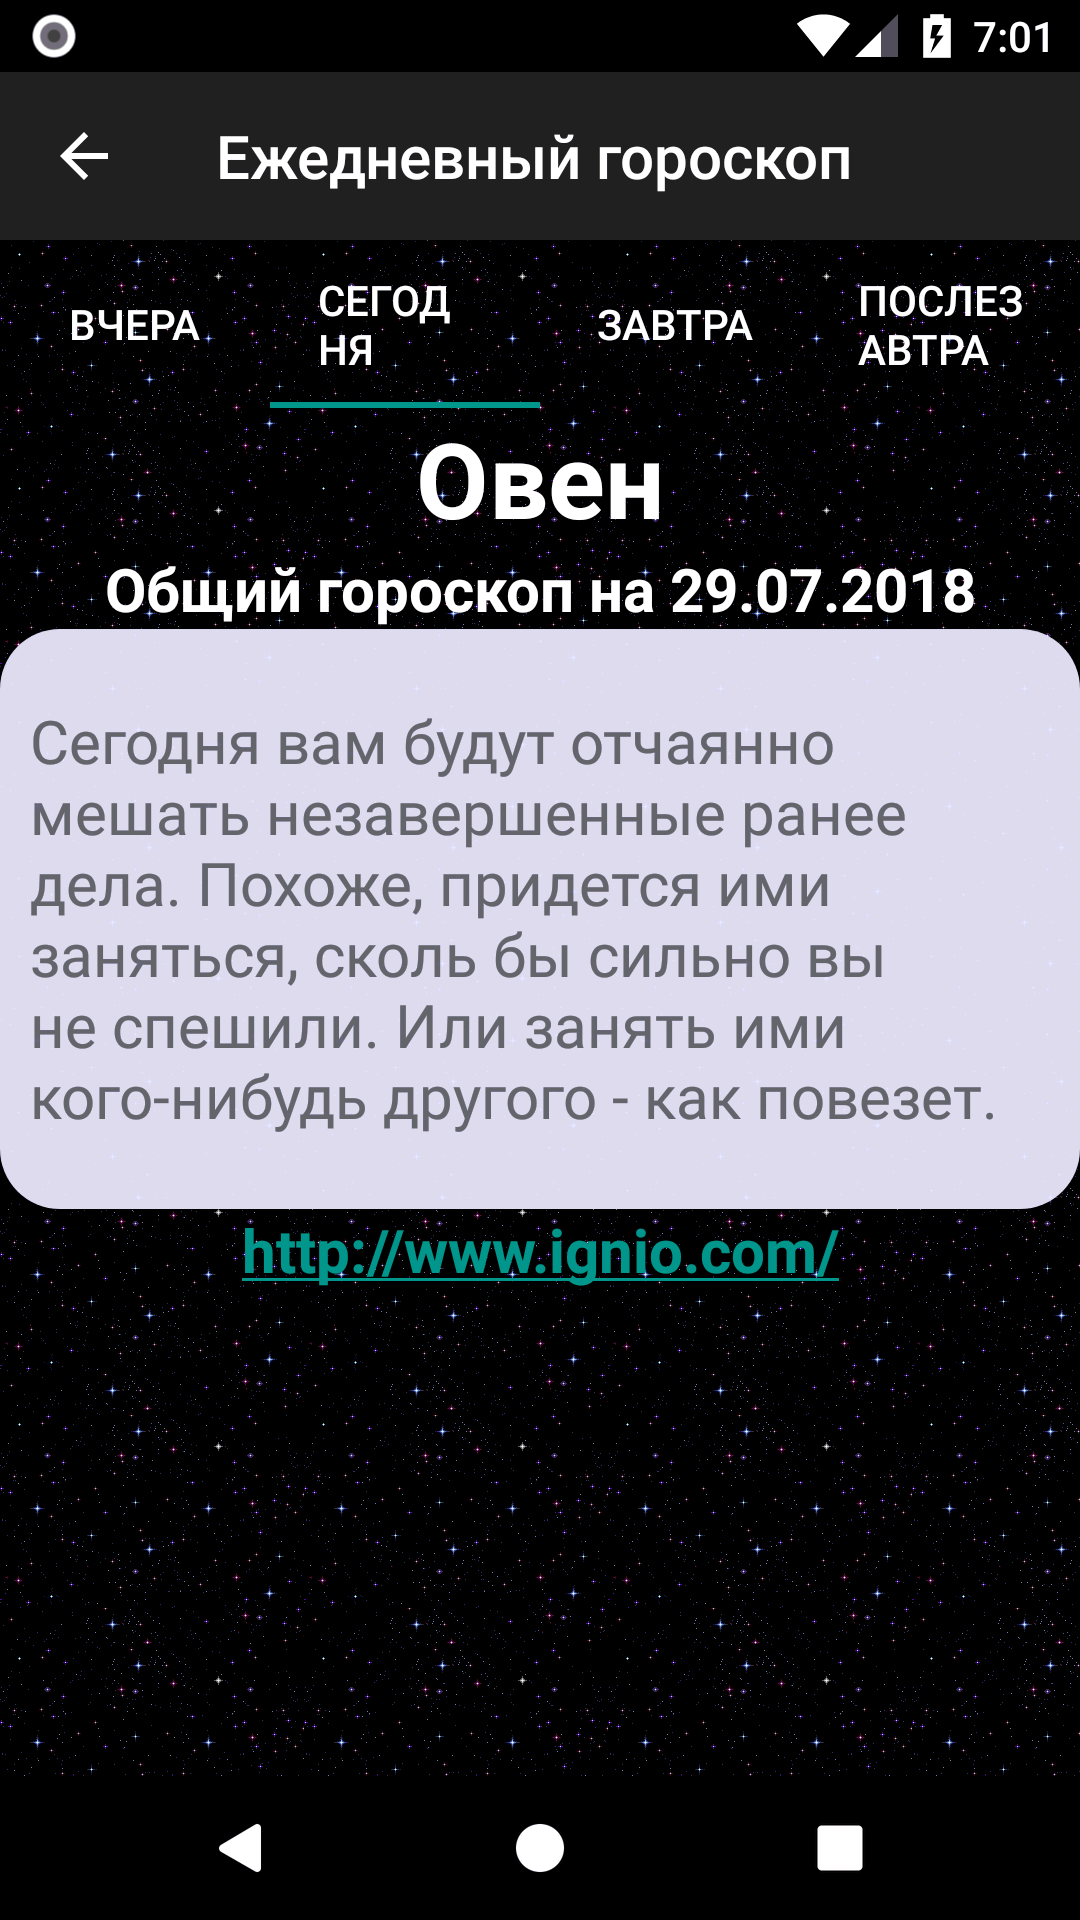 Android application Ежедневный гороскоп screenshort